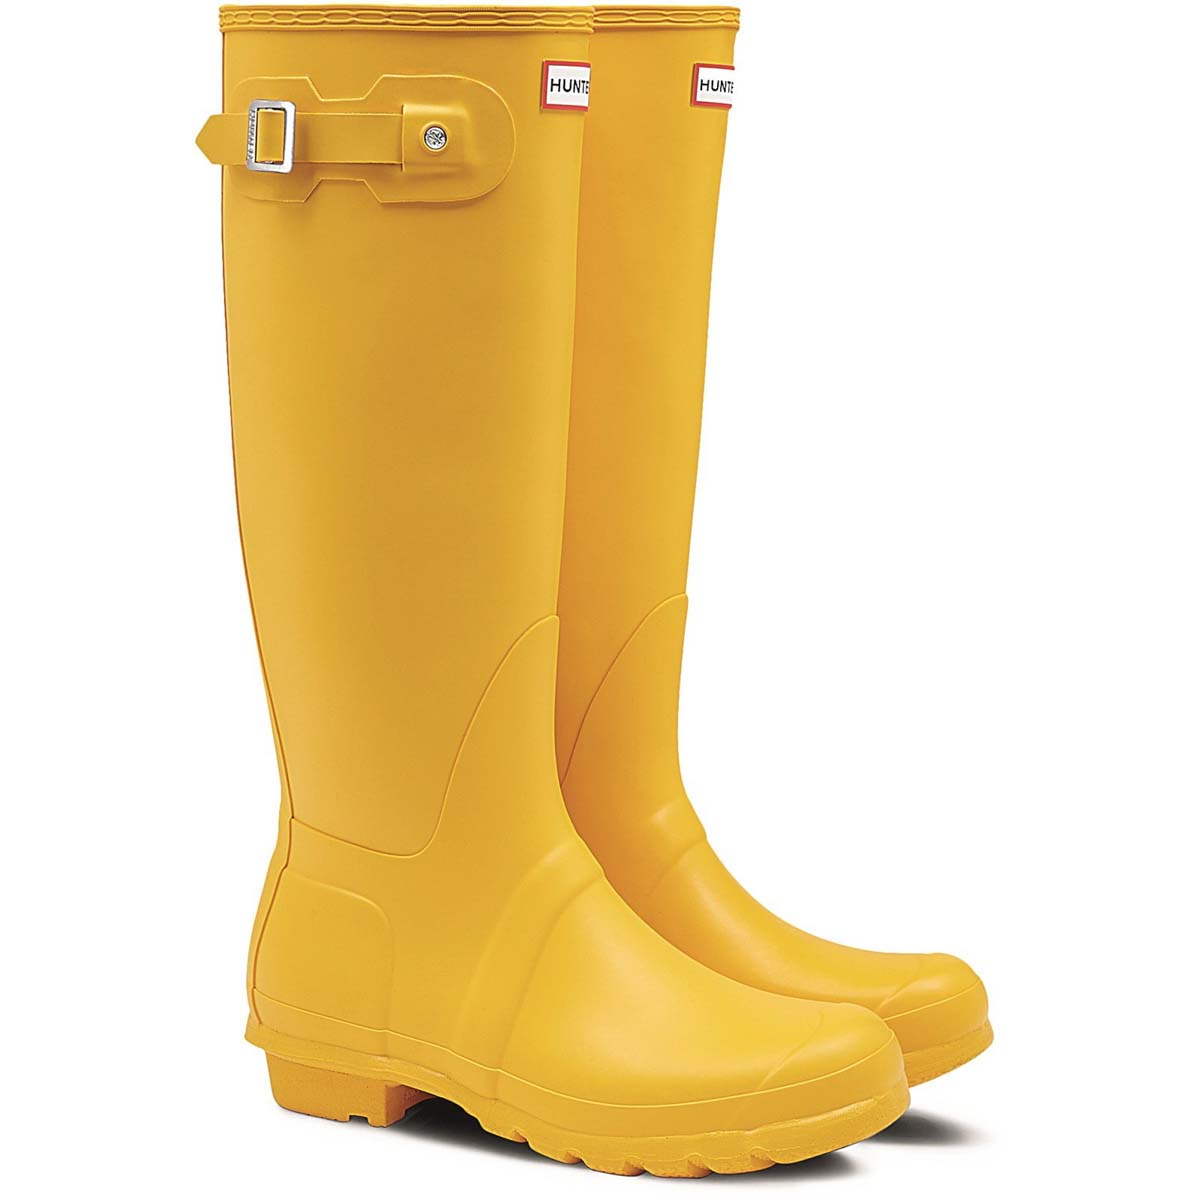 Hunter - Original Tall (Yellow) Wft1000Rma In Size 5 In Plain Yellow